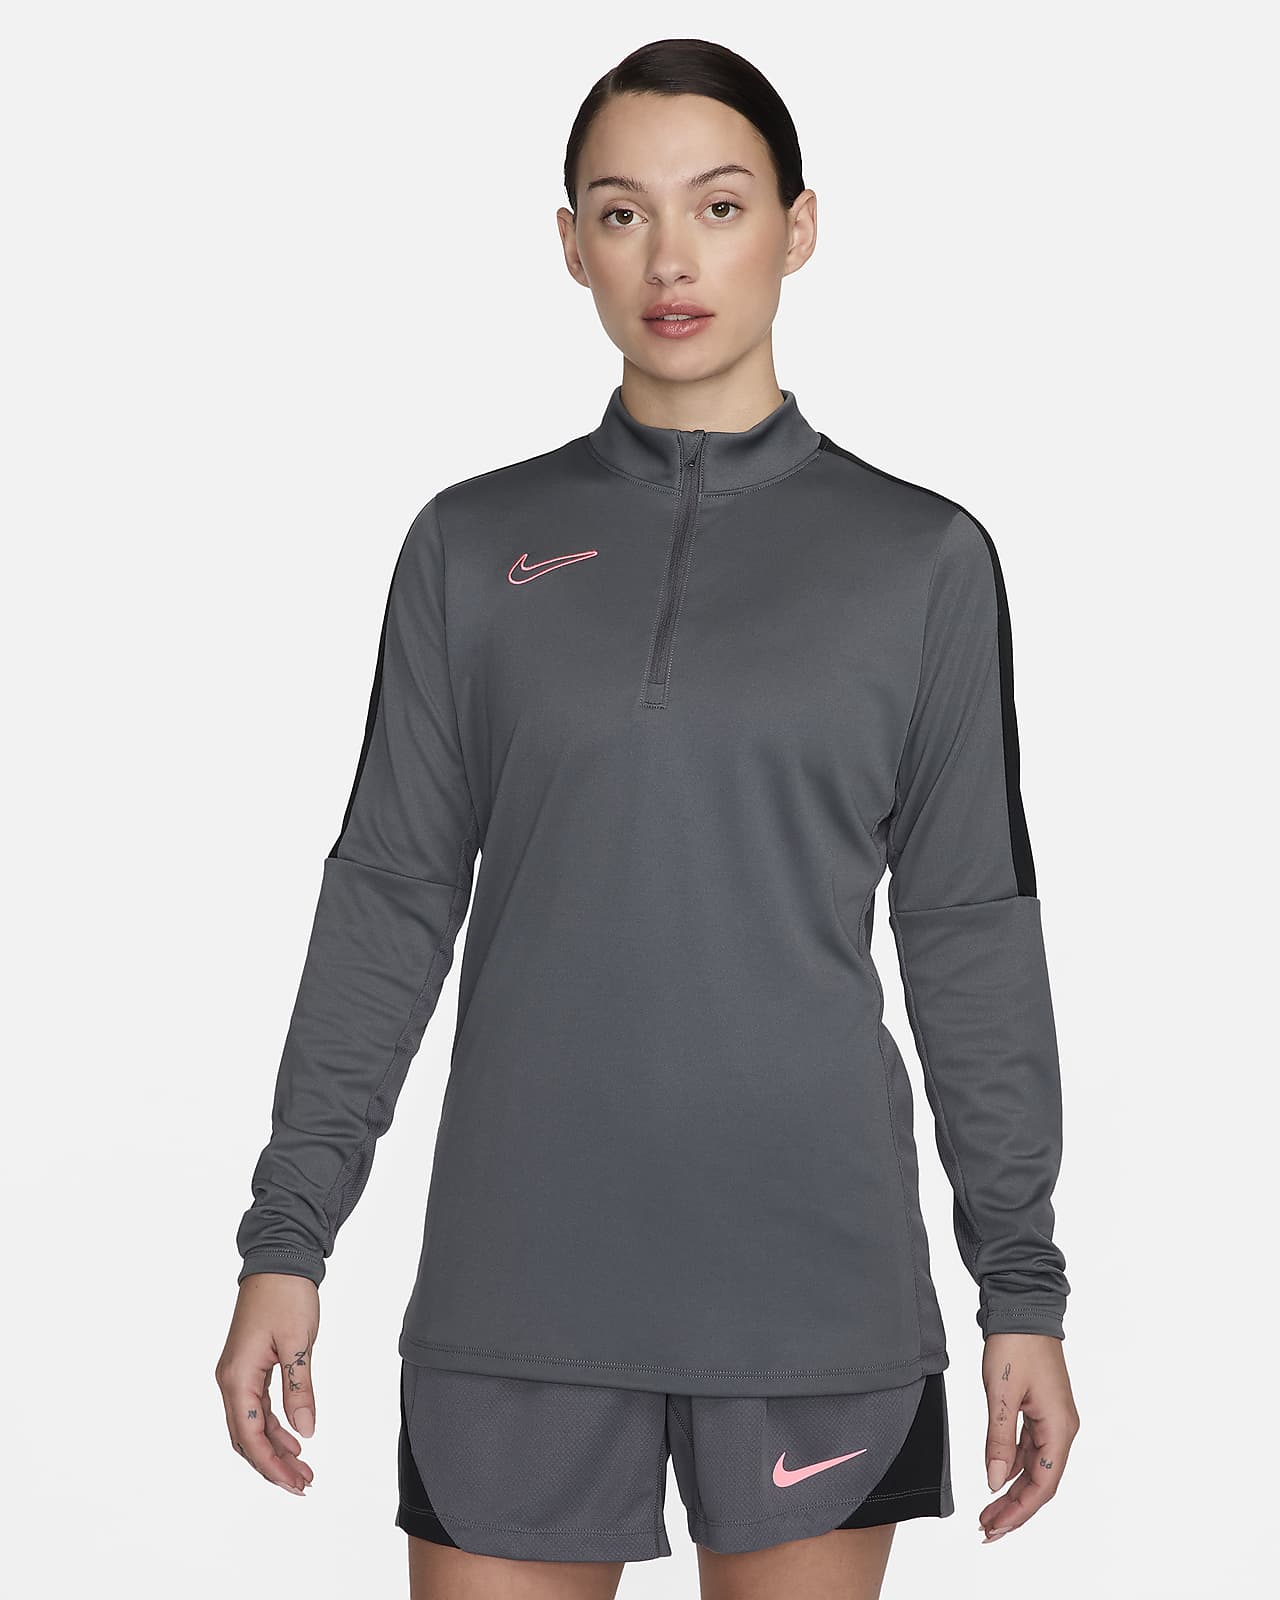 Γυναικεία ποδοσφαιρική μπλούζα προπόνησης Nike Dri-FIT Academy